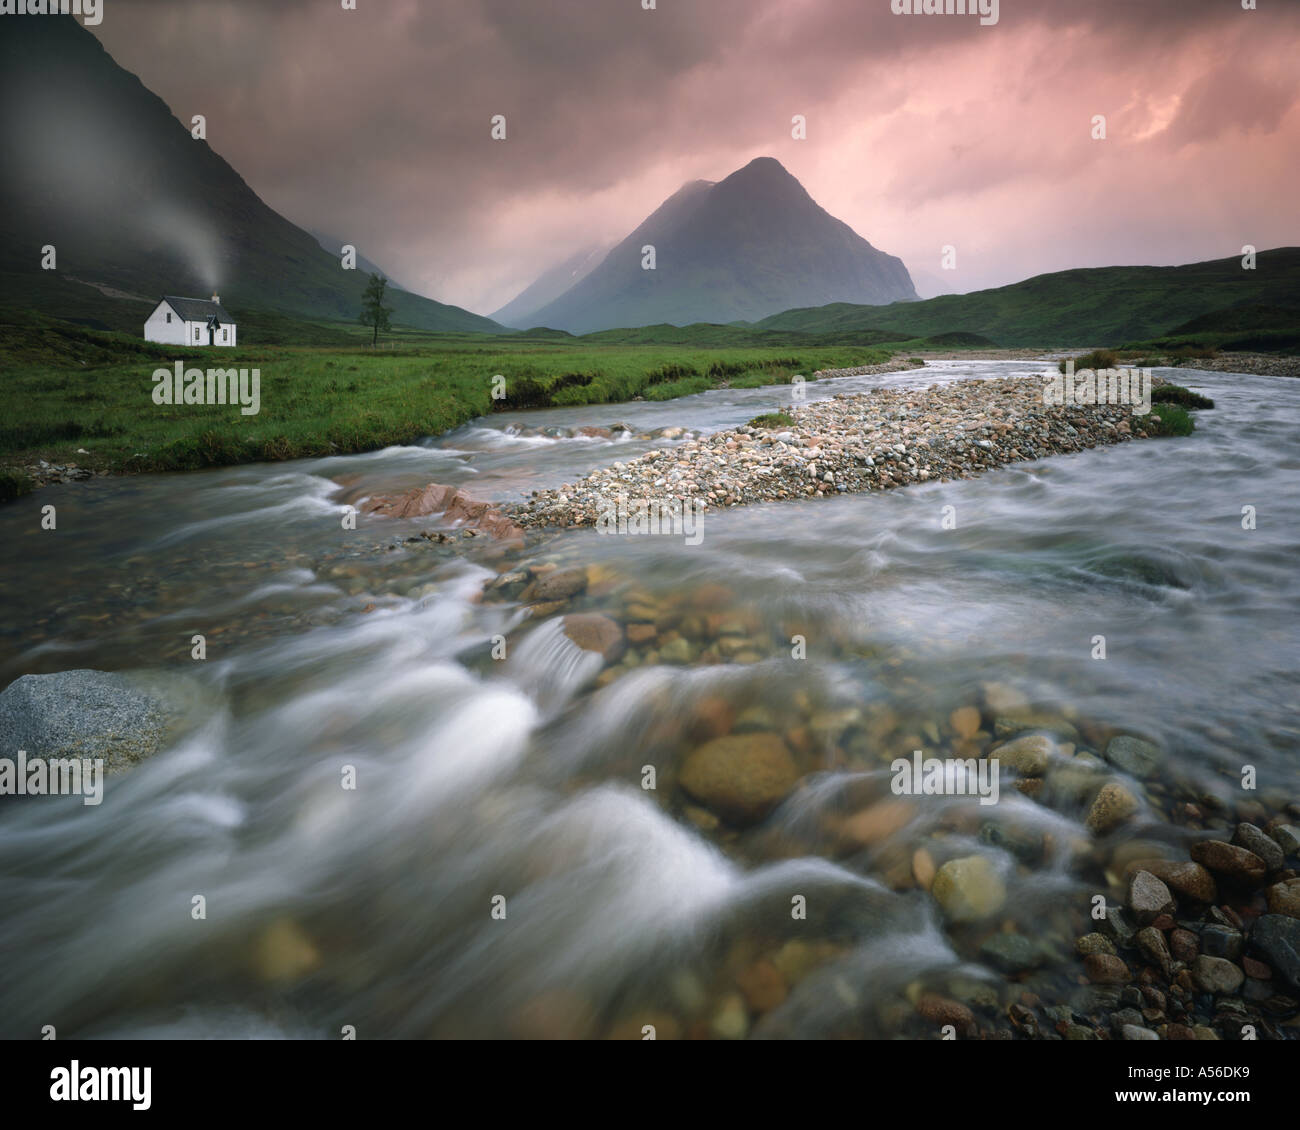 GB - Escocia: Río Coupall en Glen Coe Foto de stock